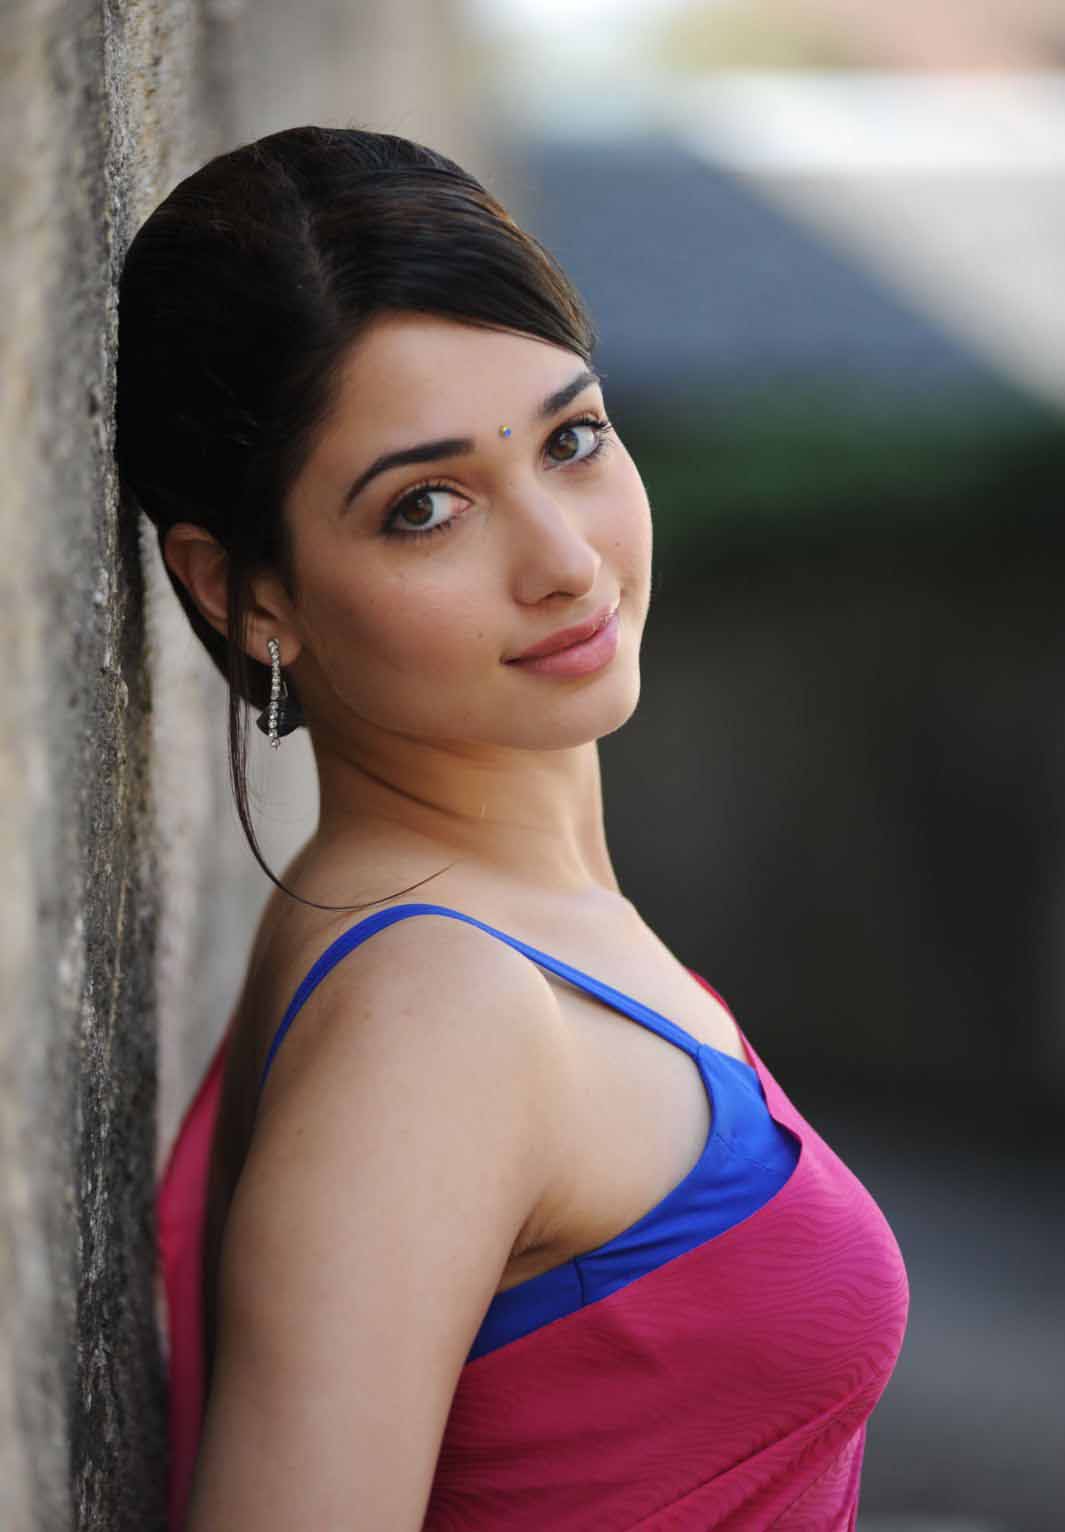 south indian actress tamanna hot pics ~ South Indian Actresses Pics